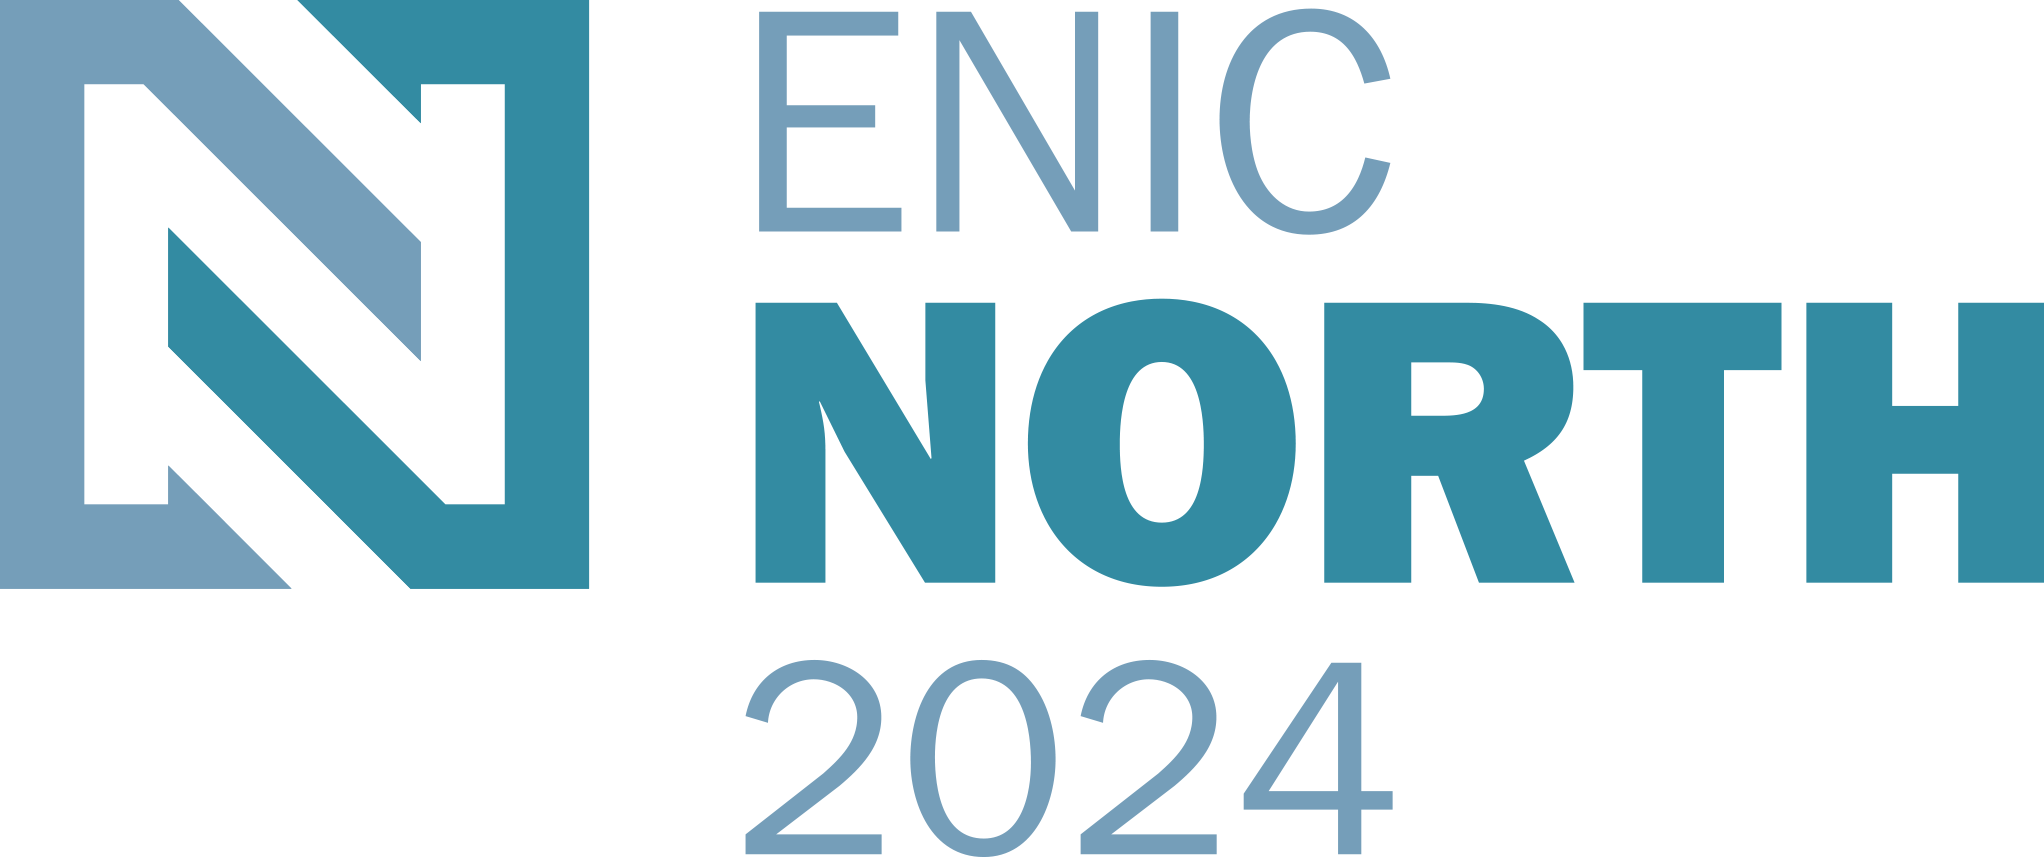 ENIC NORTH 2024 ECCTIS Ltd.